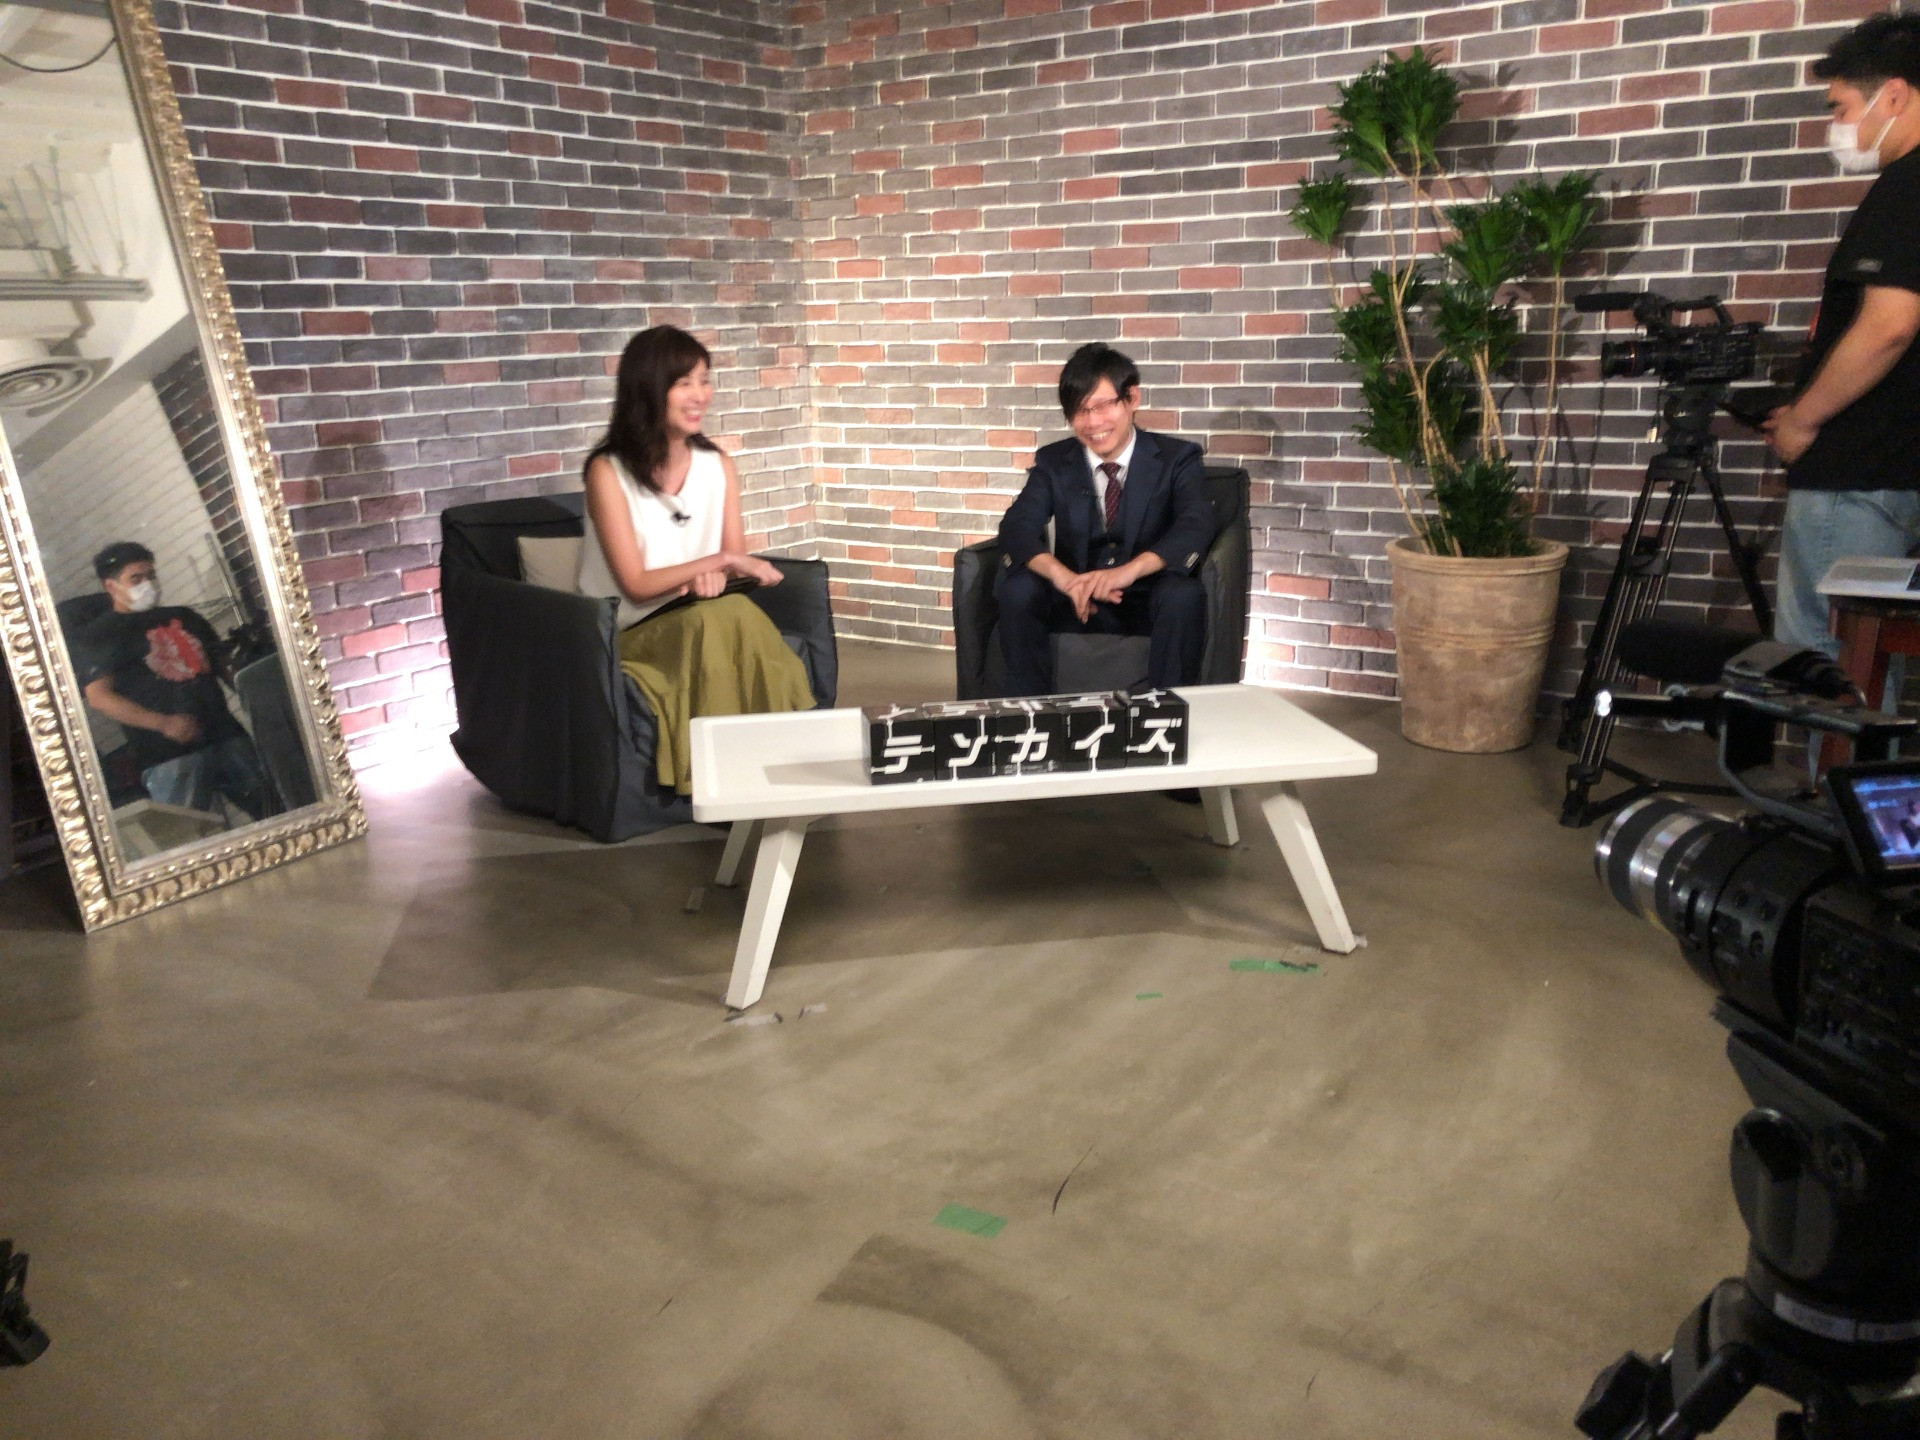 代表が出演したTV番組「HISTORY」(TOKYO MX)が書籍になりました。